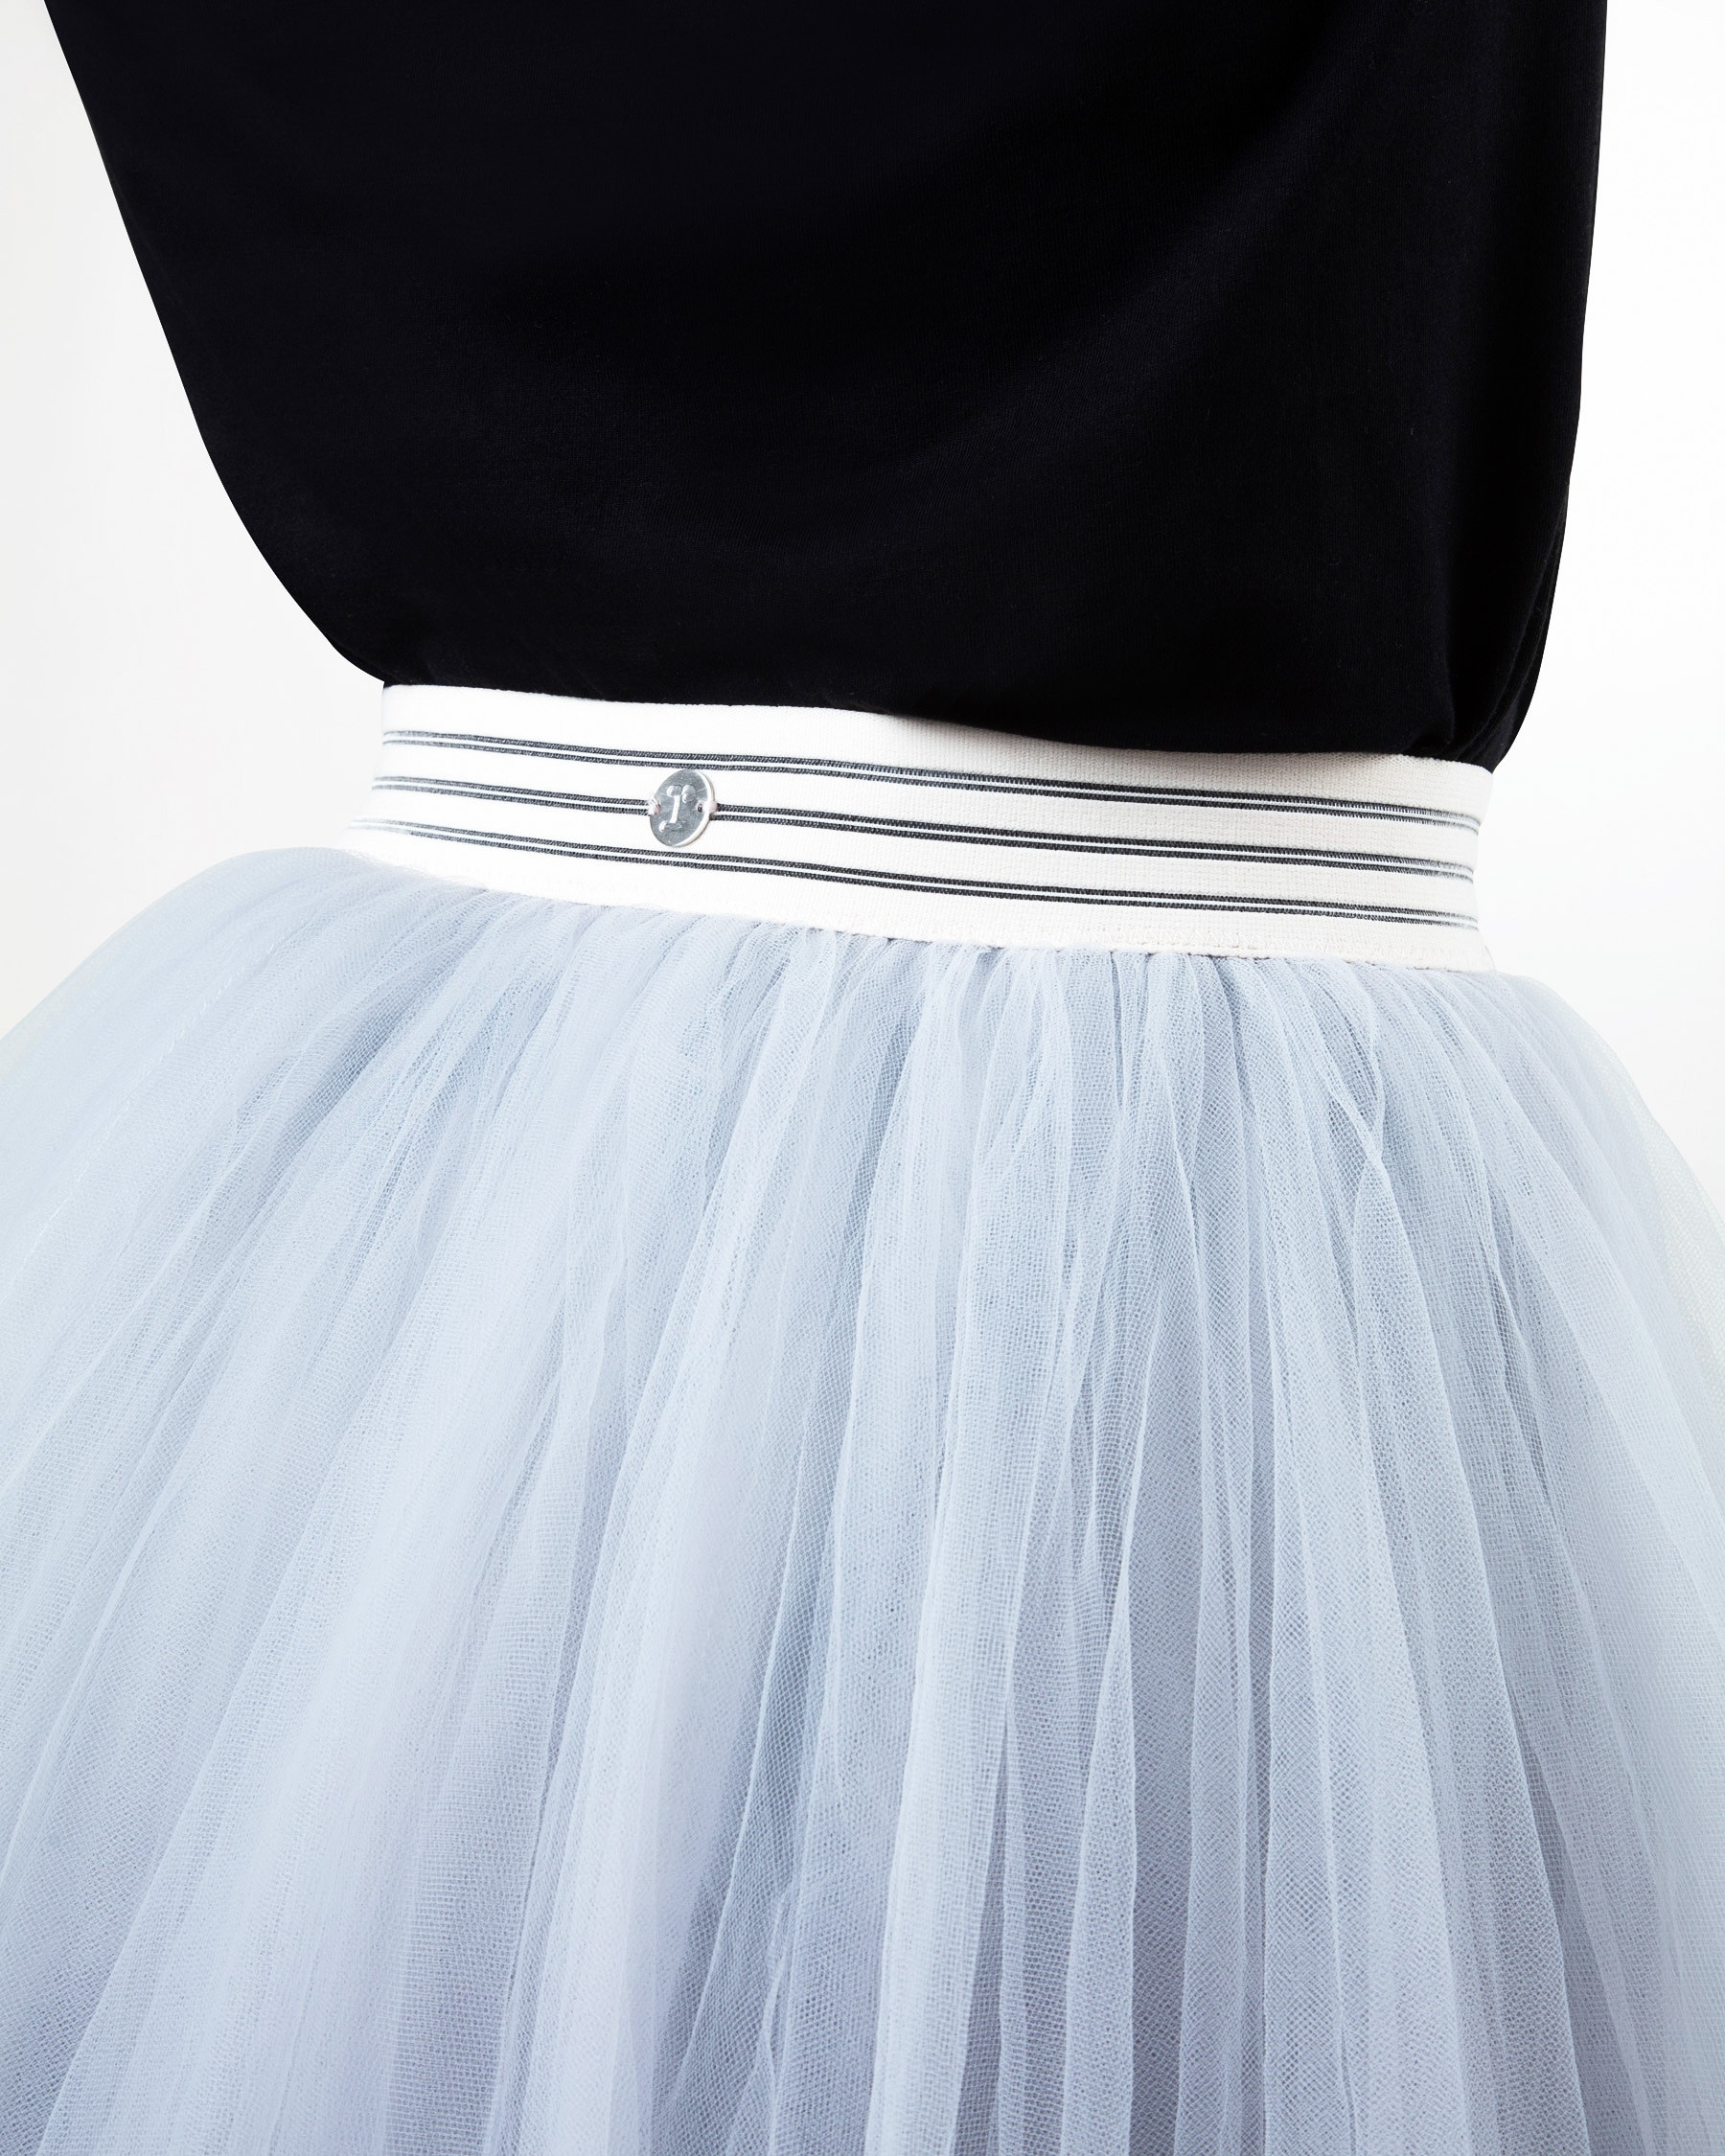 Ballerine mid-lenght tutu skirt - 3